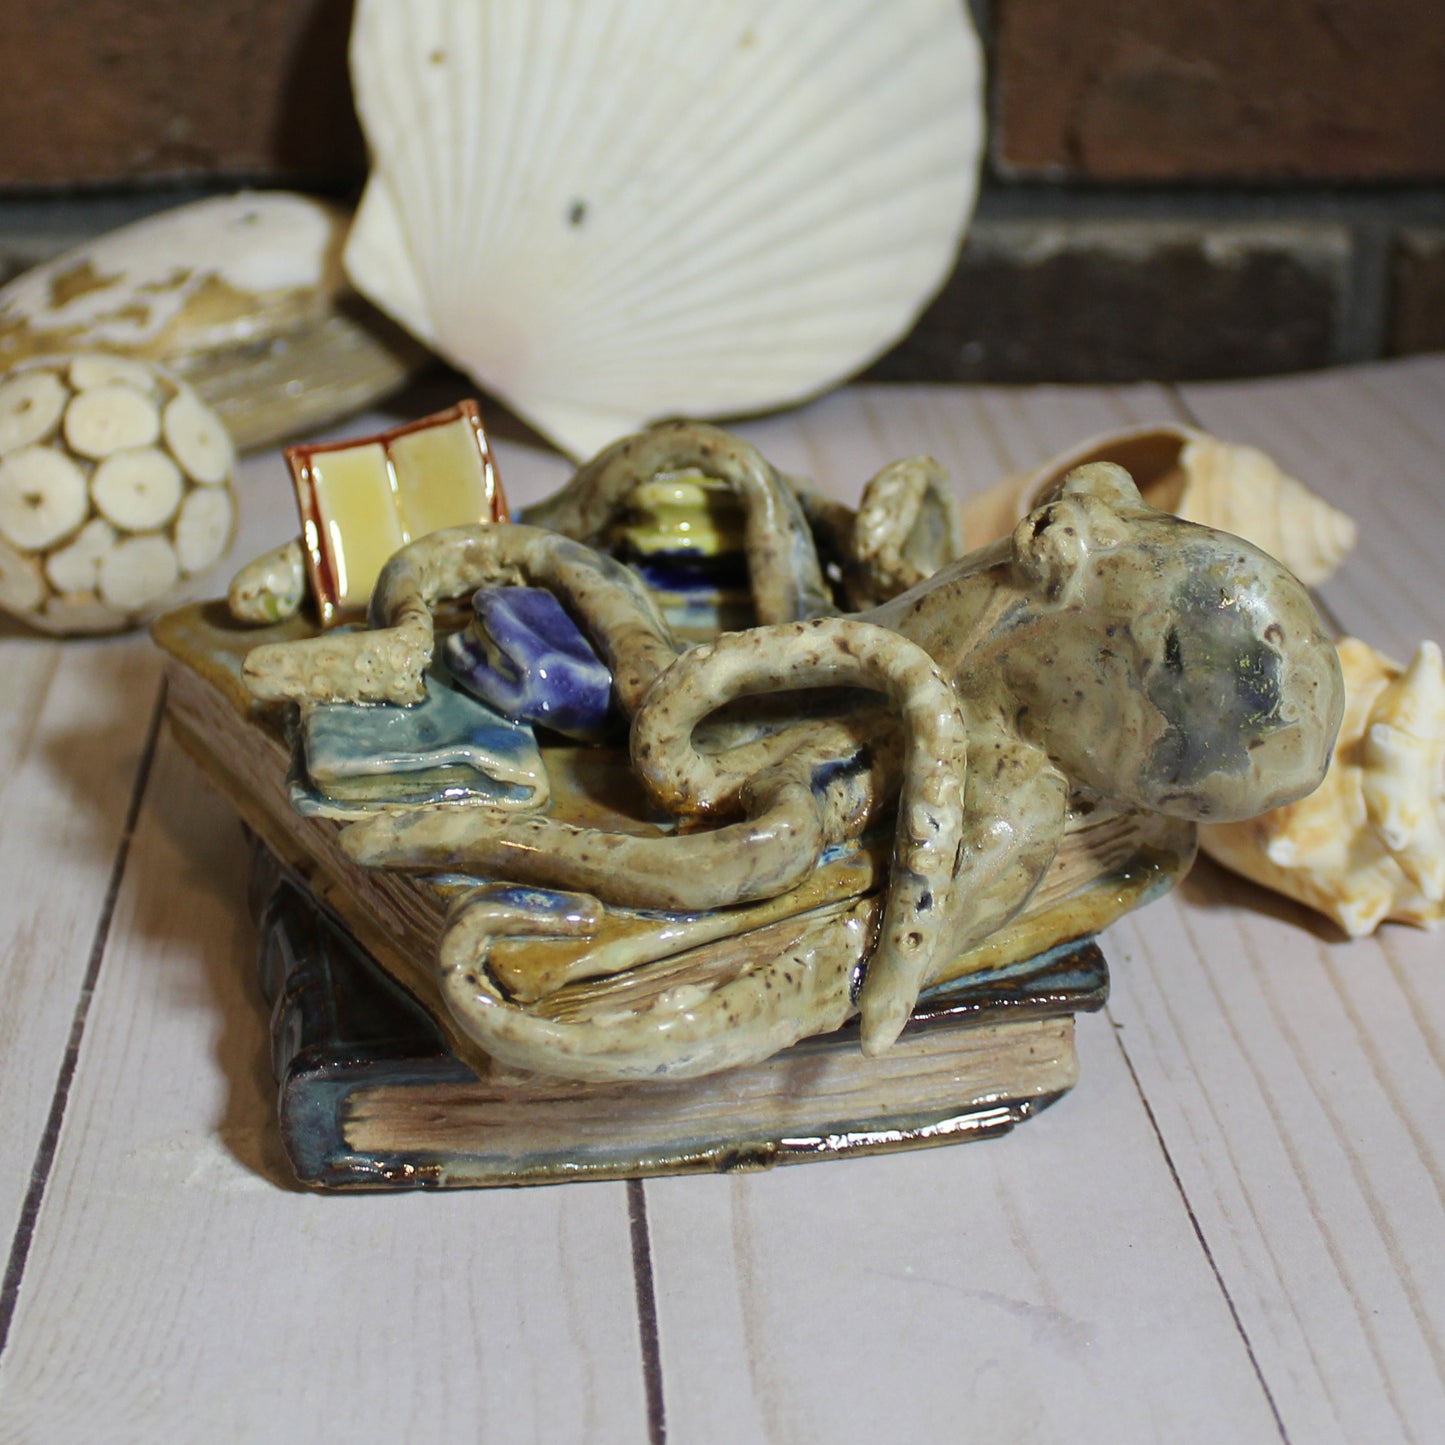 Ceramic Octopus Book Lover Sculpture #2